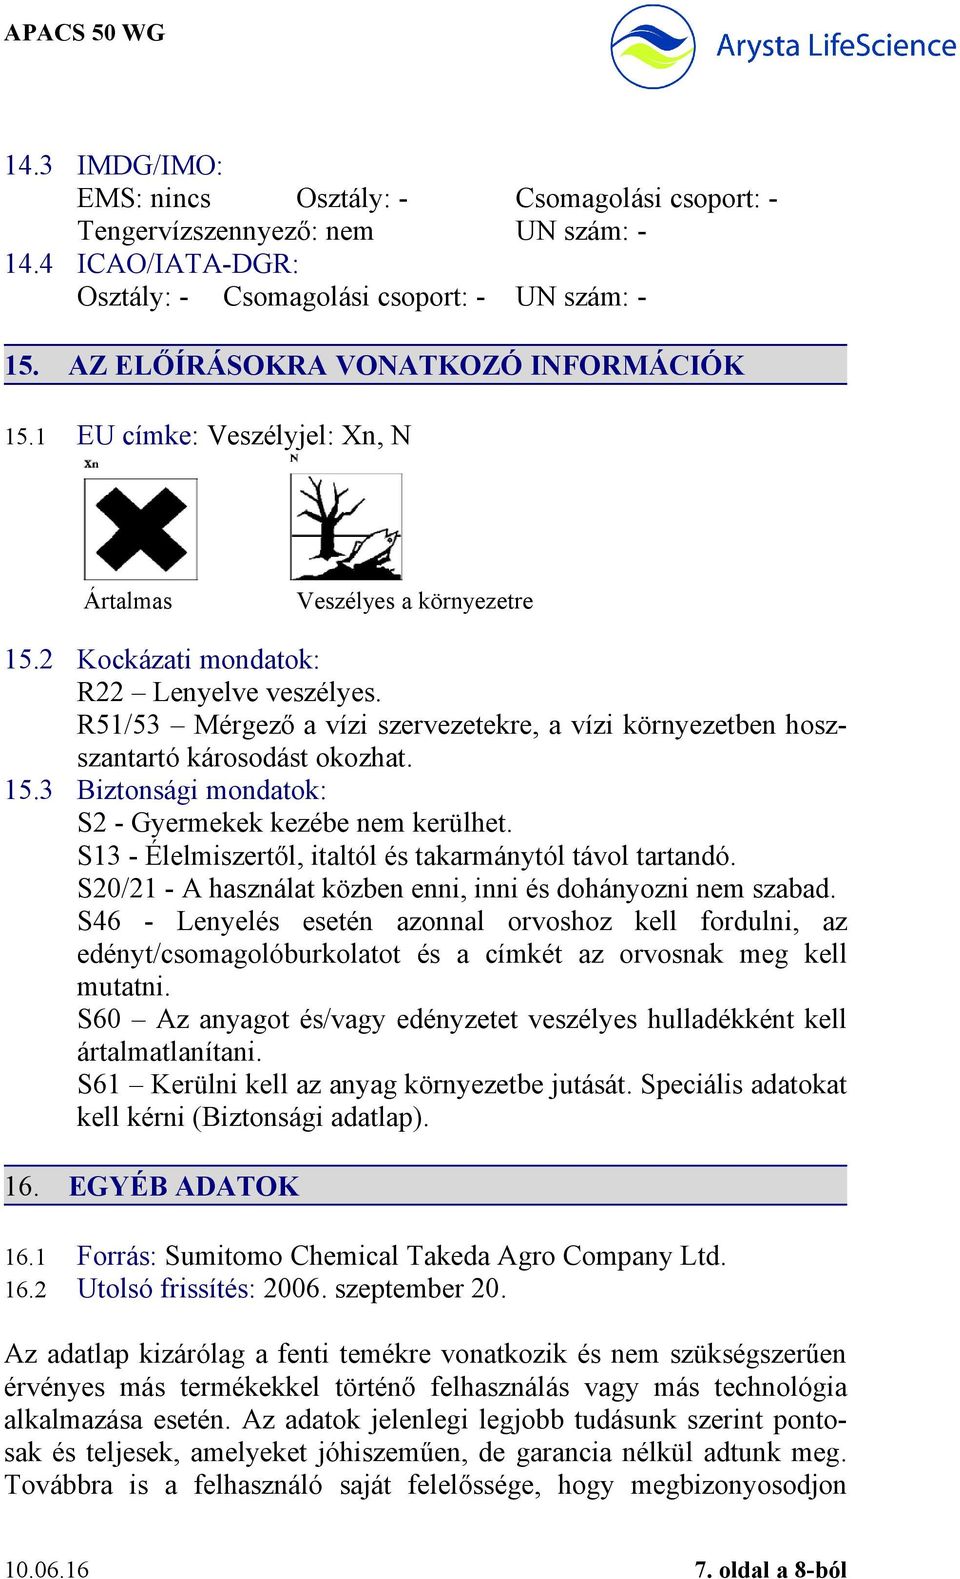 BIZTONSÁGI ADATLAP (91/155-93/112/EGK) APACS 50 WG - PDF Ingyenes letöltés